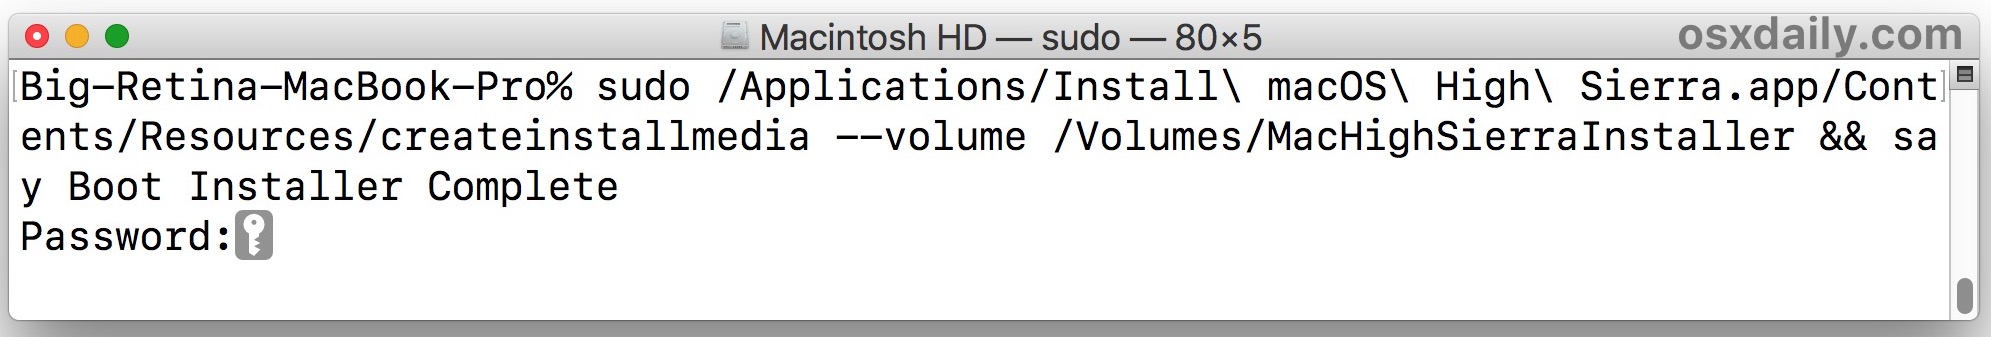 sintaxis de comandos para crear el instalador de arranque de macOS High Sierra